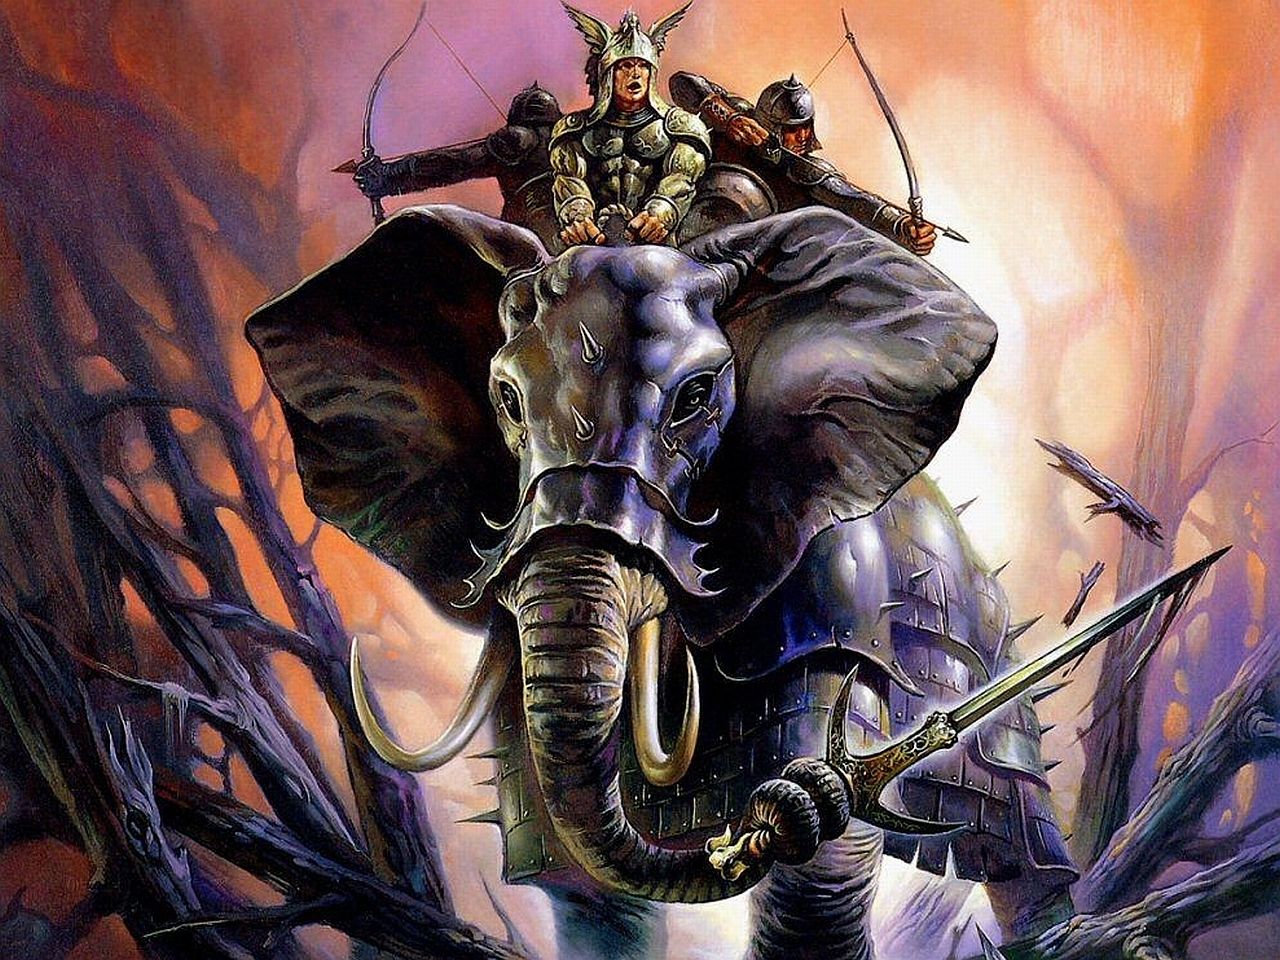 Elephant riders Wallpaper. Warriors wallpaper, Fantasy art, Fantasy